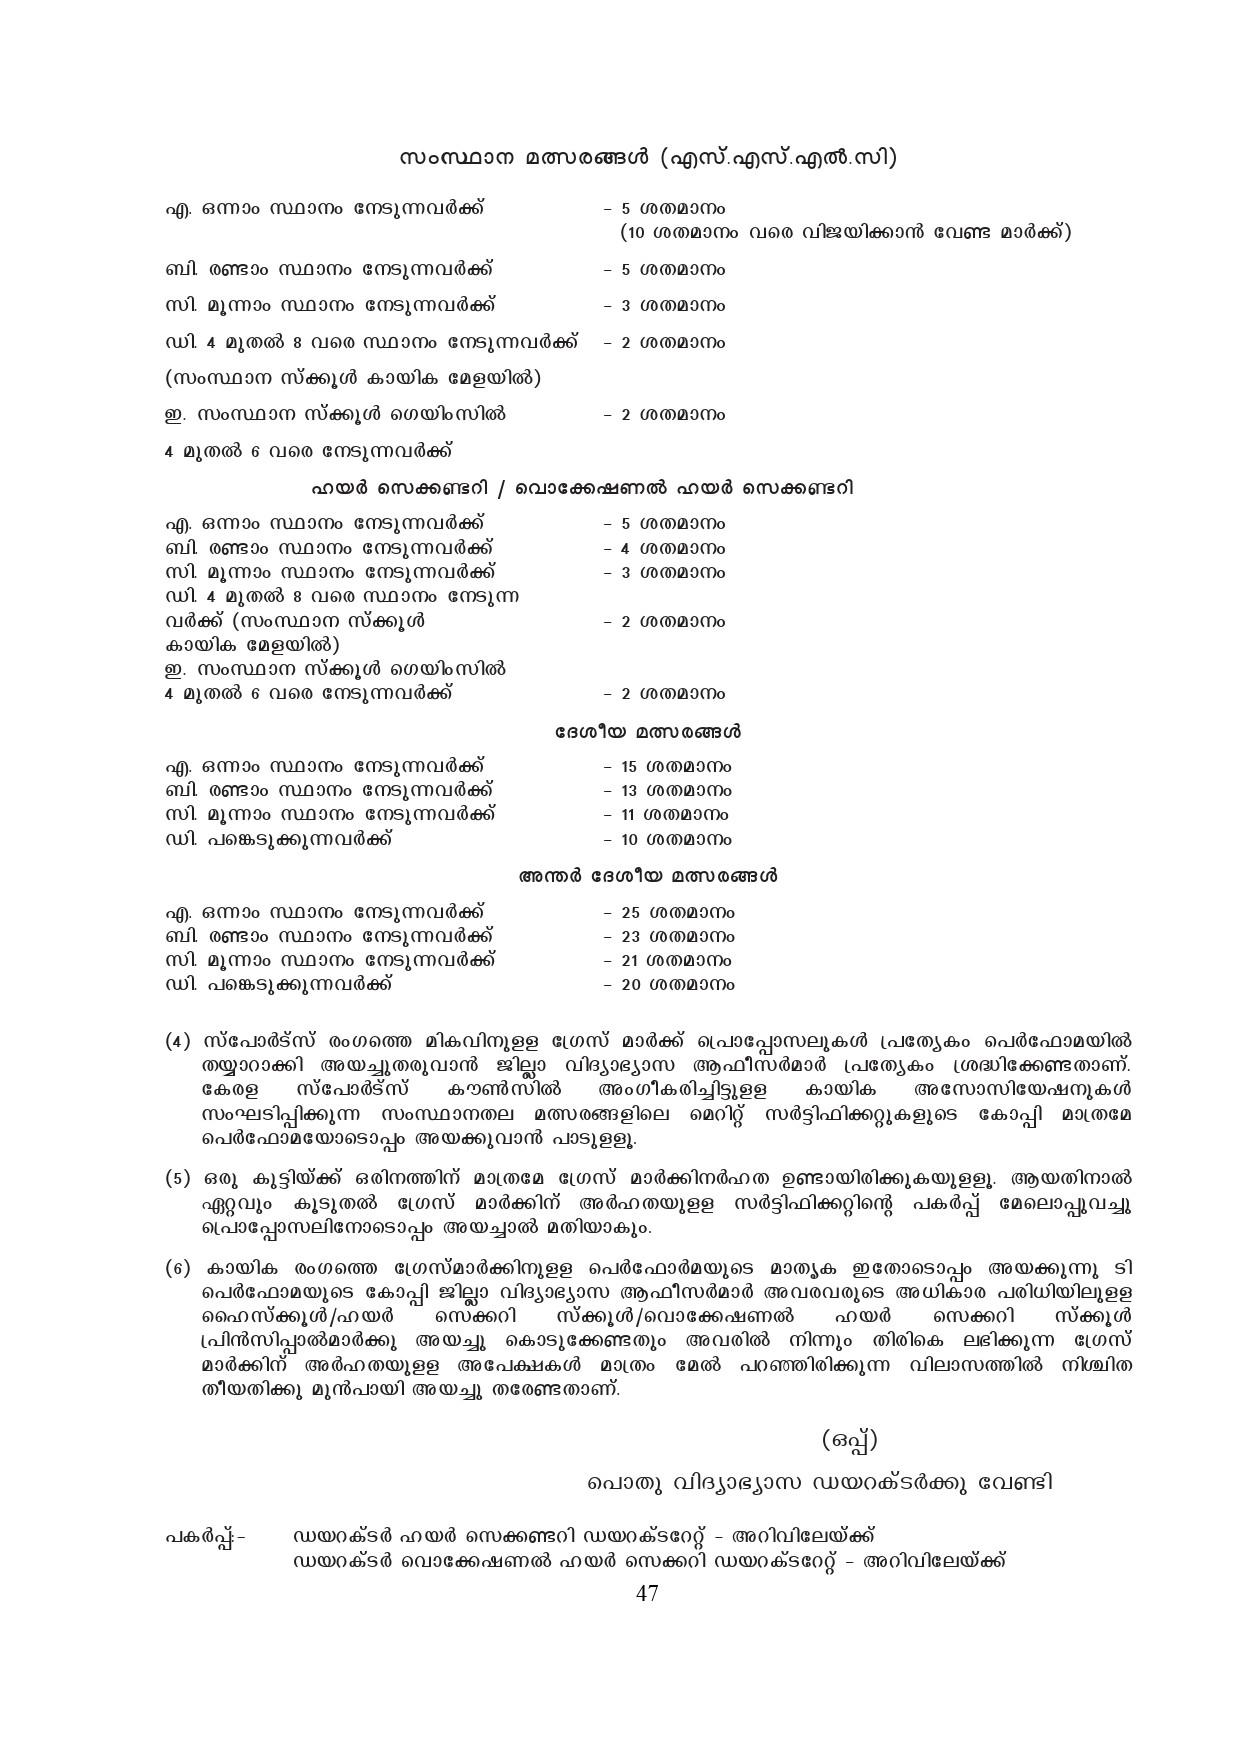 Kerala SSLC Exam Result 2019 - Notification Image 47